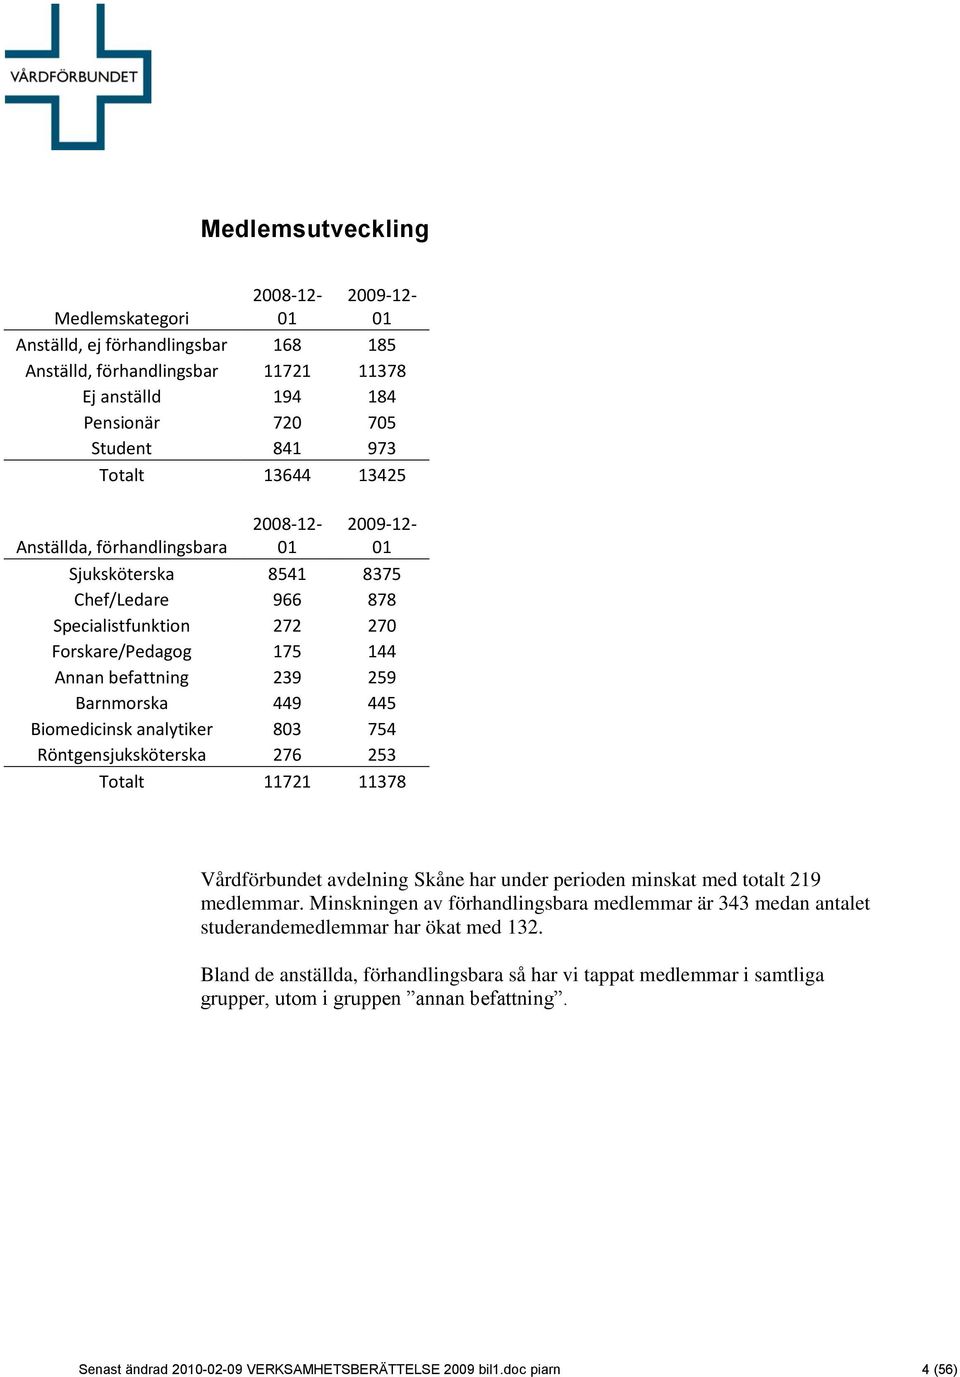 Biomedicinsk analytiker 803 754 Röntgensjuksköterska 276 253 Totalt 11721 11378 Vårdförbundet avdelning Skåne har under perioden minskat med totalt 219 medlemmar.